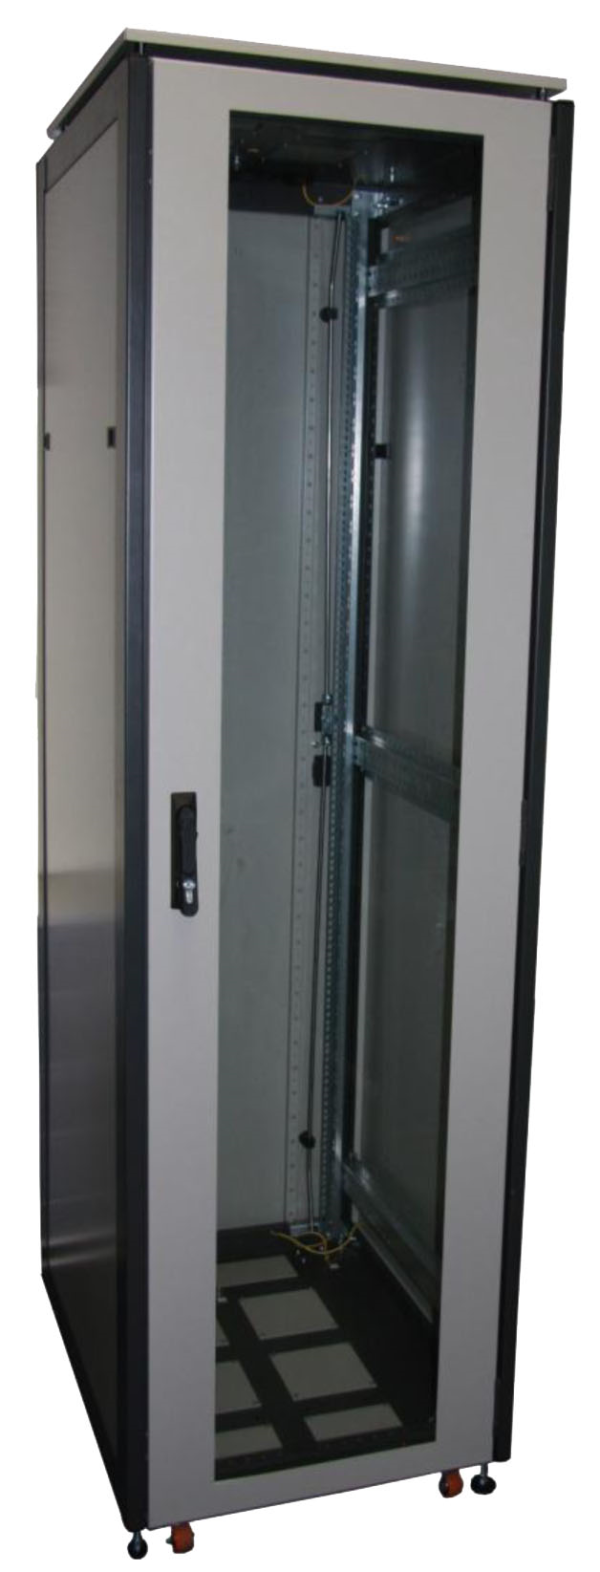 ССКТБ ТОМАСС ШТК-6612Э-01 - шкаф телекоммуникационный 19", 24U, 600х600х1200 мм, с металлической задней панелью и стеклянной дверью